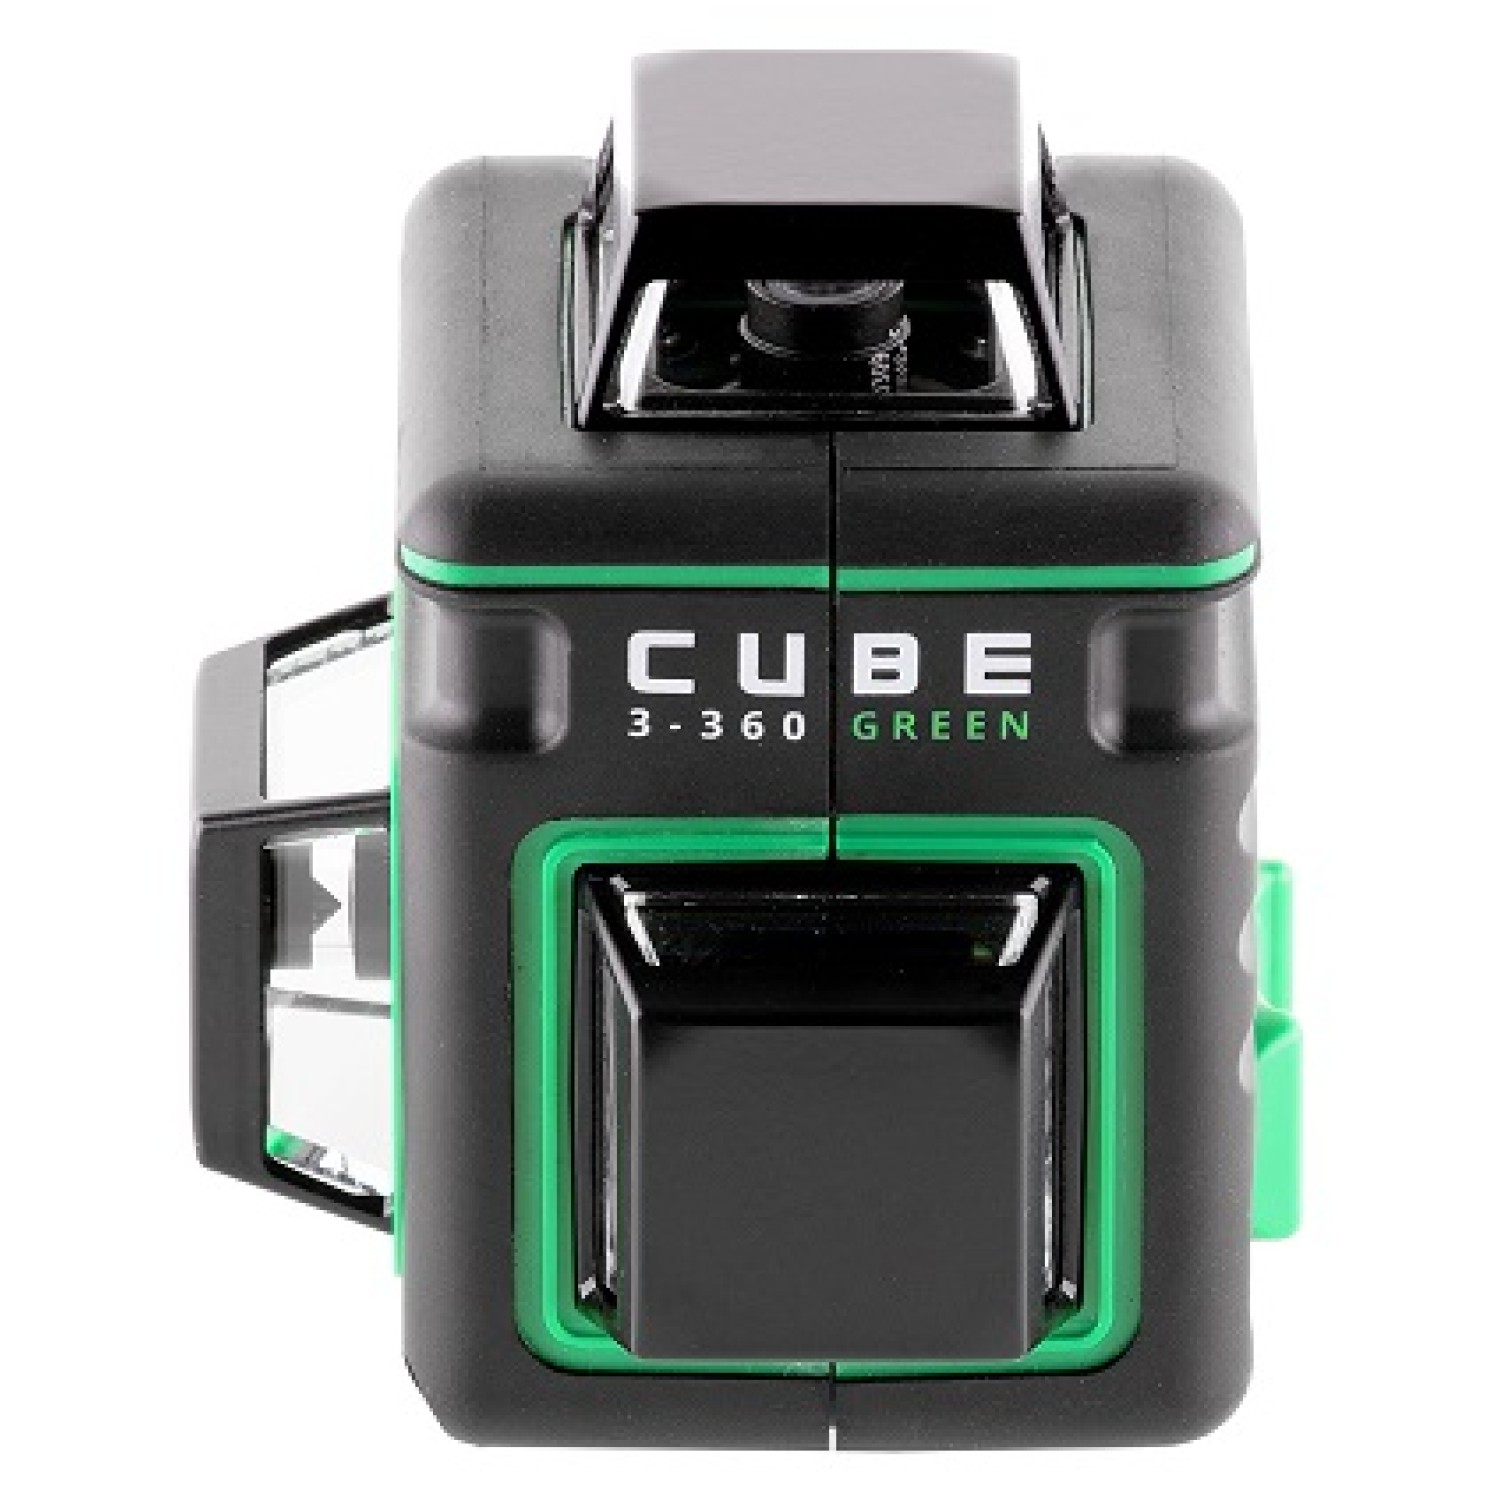 Лазерный уровень ada cube 360 green. Ada Cube 3-360 Green. Ada Cube 3-360 Basic Edition а00559. Уровень лазерный ada Cube 3-360 Green Ultimate Edition. Лазерный уровень ada Cube 360 Basic Edition.